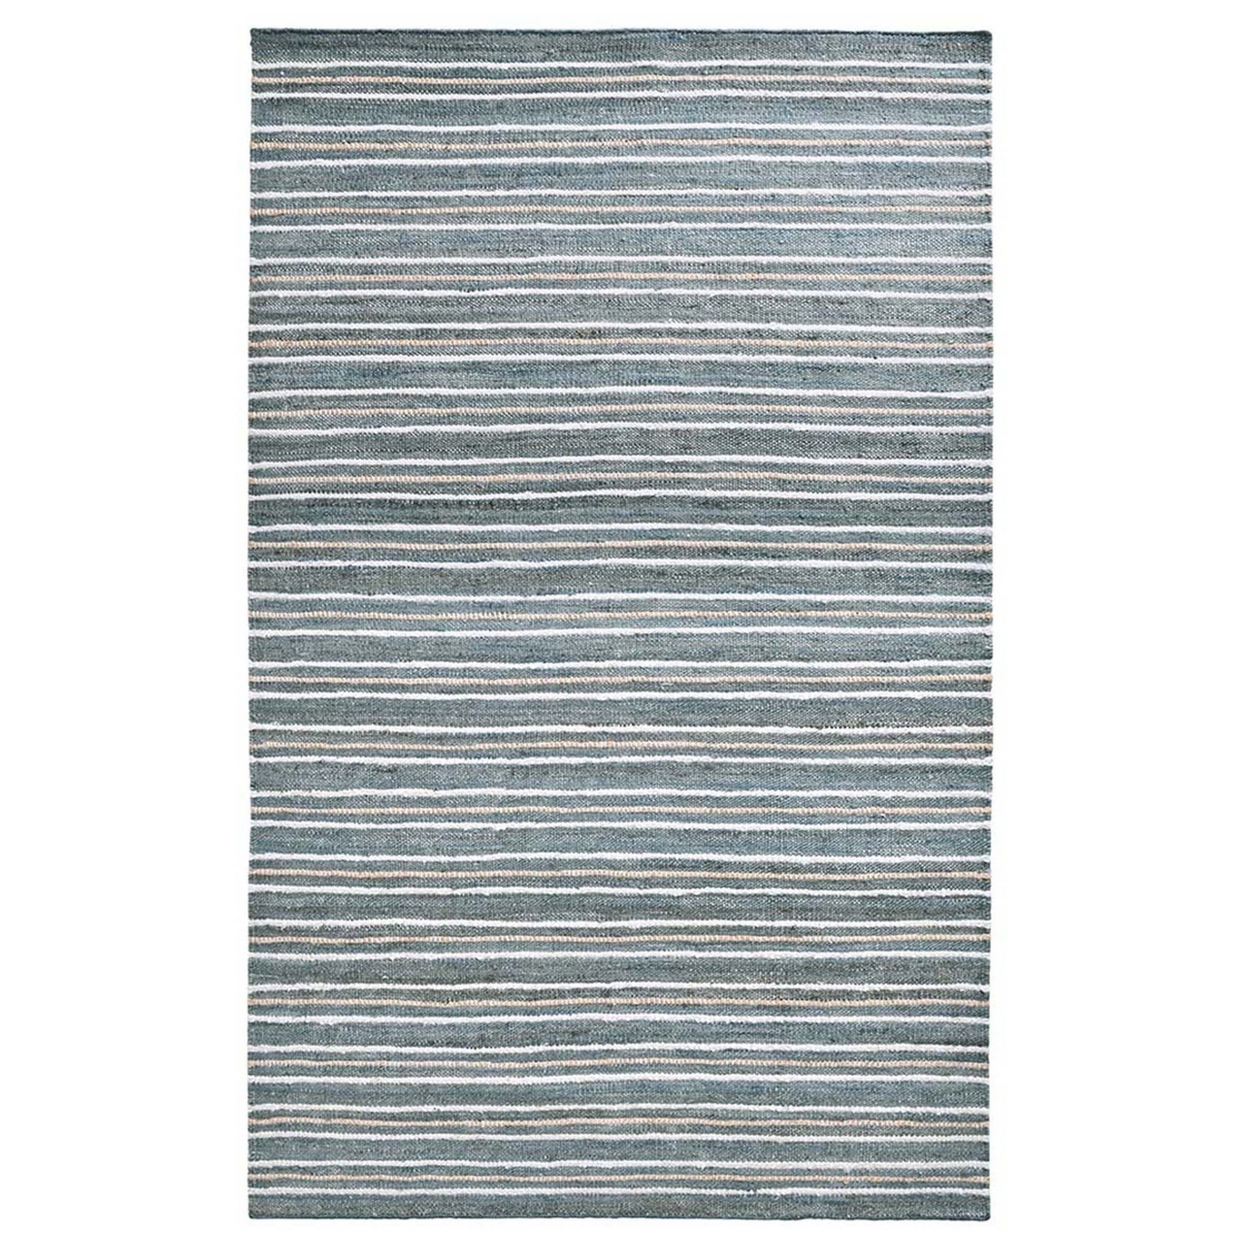 Azu 8 X 10 Handmade Large Area Rug, Classic Stripes, Aqua Blue, Multicolor- Saltoro Sherpi